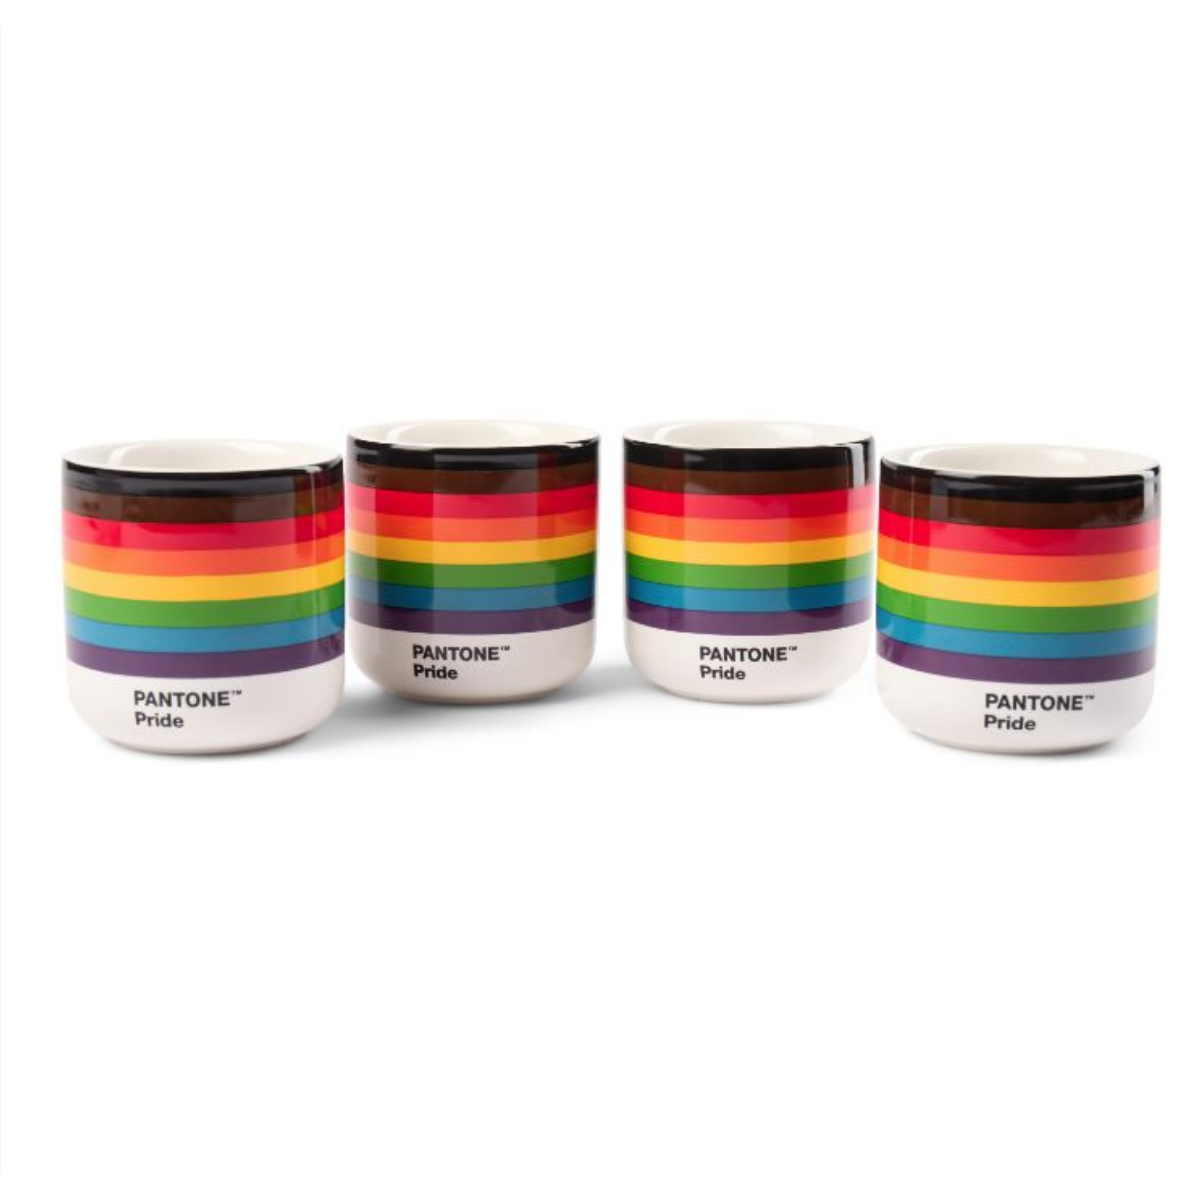 Pantone Pride Cortado Cups Set of 4